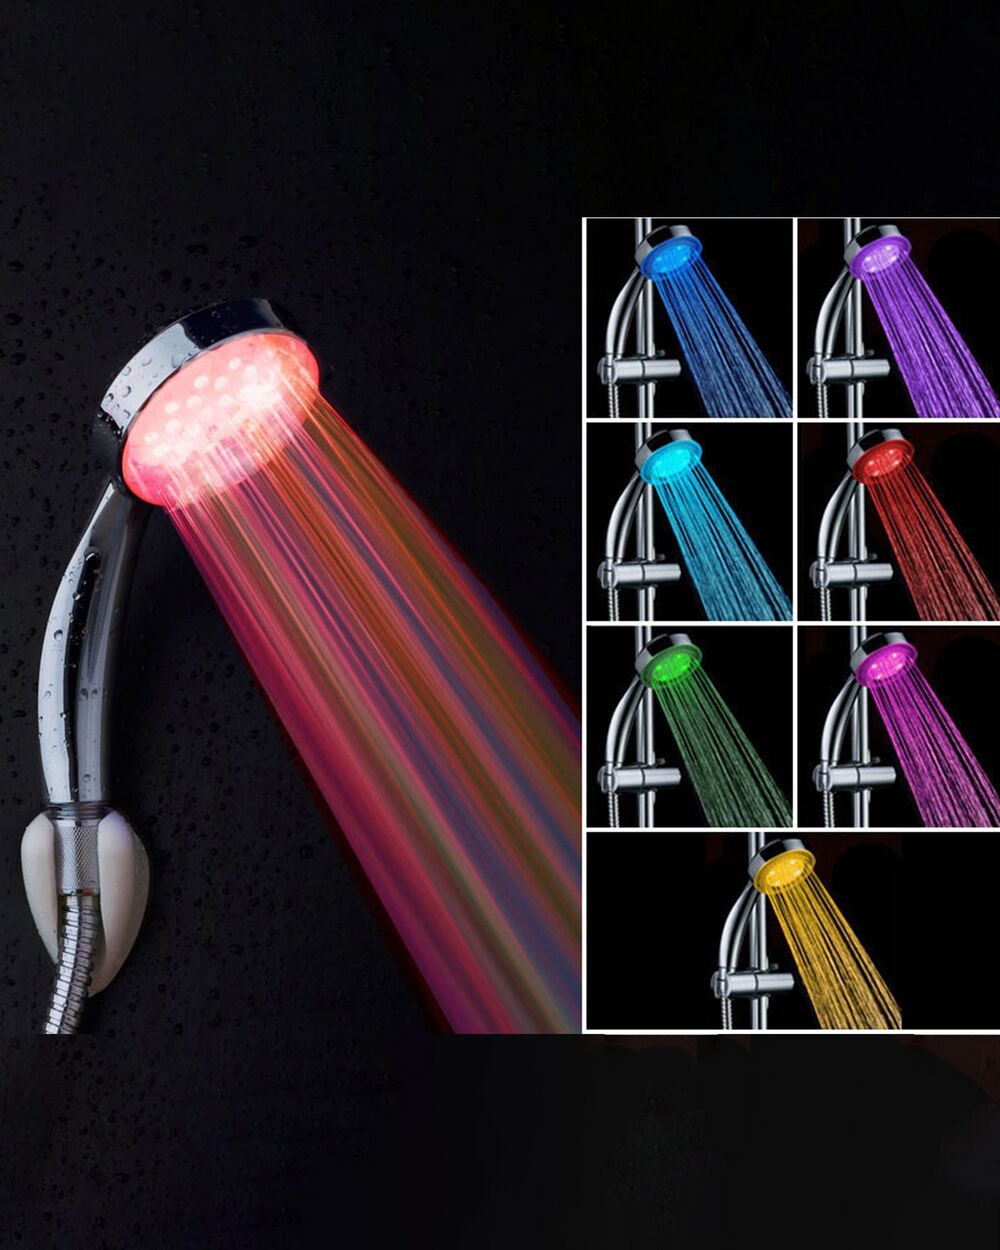 Pommeau de douche lumineux LED - 3 couleurs